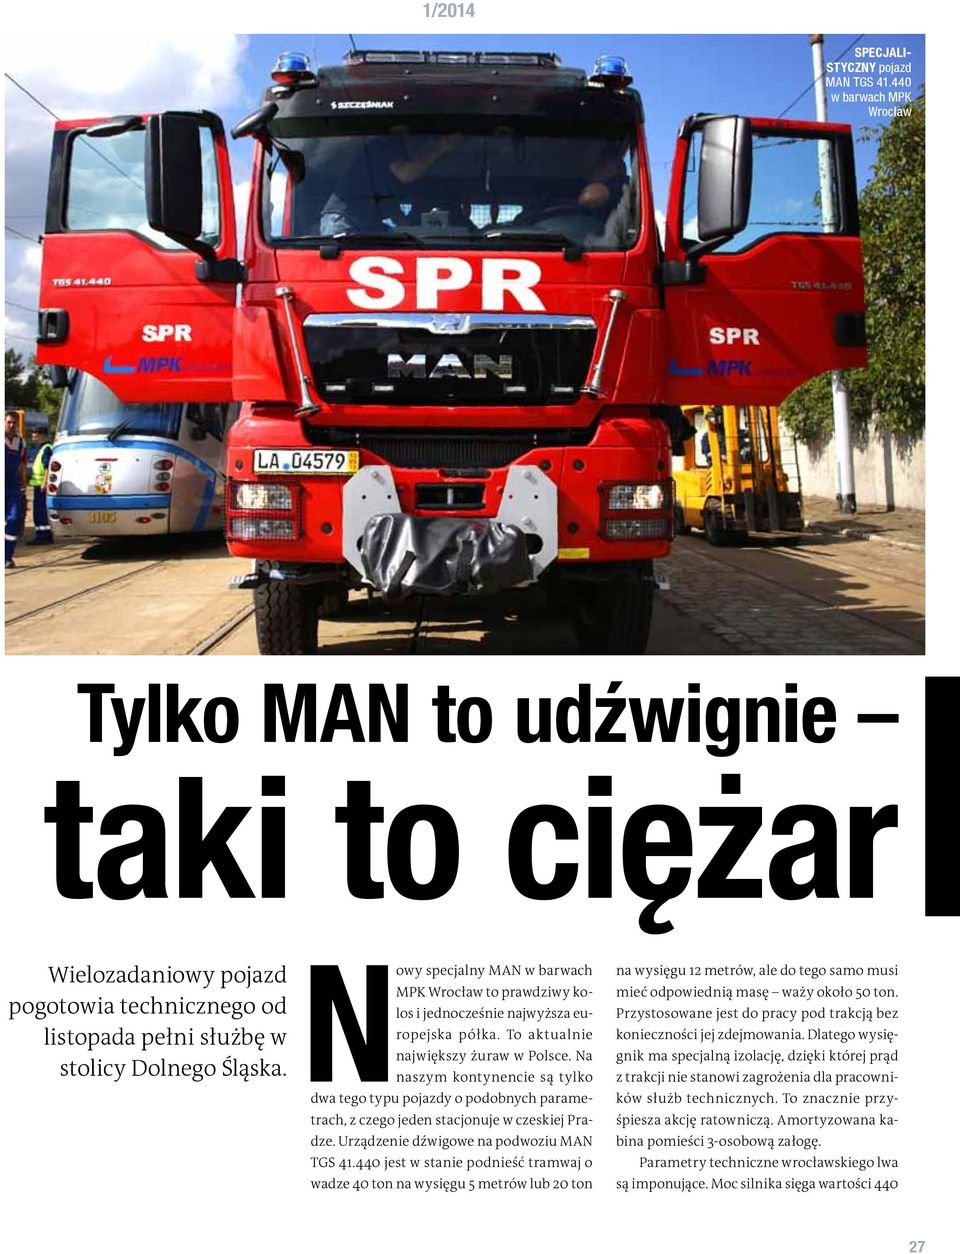 Nowy specjalny MAN w barwach MPK Wrocław to prawdziwy kolos i jednocześnie najwyższa europejska półka. To aktualnie największy żuraw w Polsce.